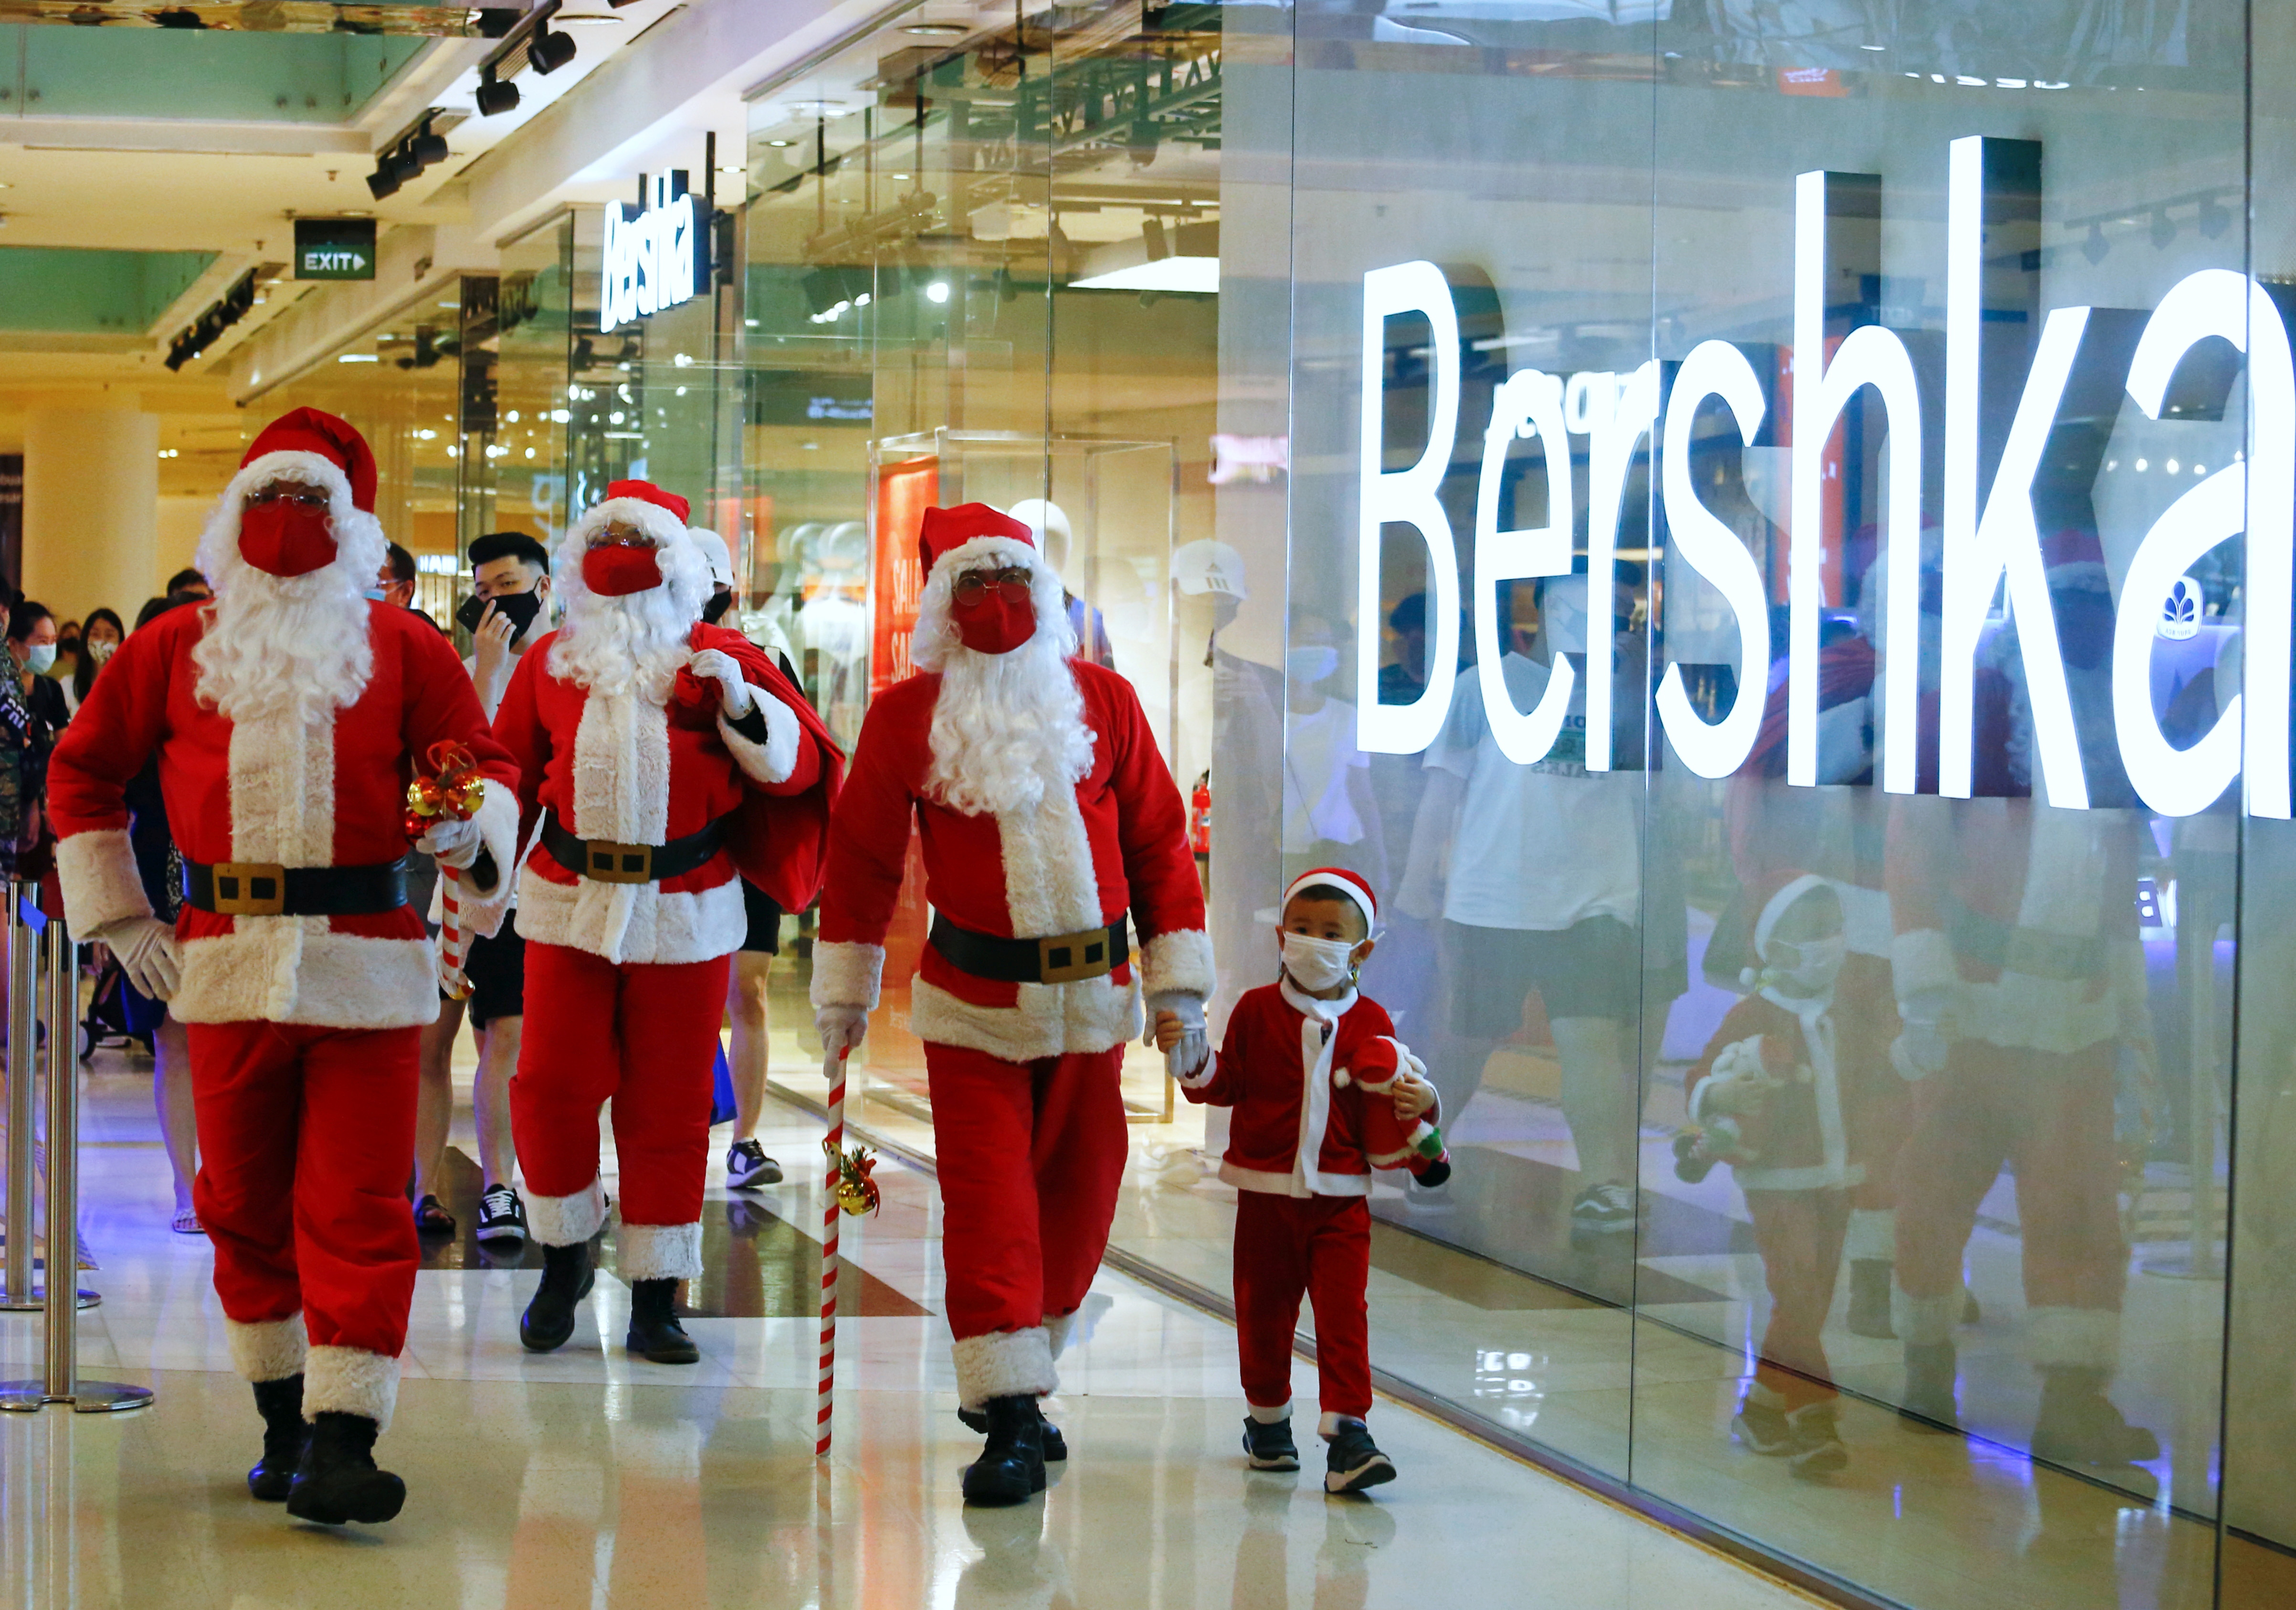 Personas vestidas con trajes de Papá Noel caminan en un centro comercial en Yakarta, Indonesia (REUTERS/Ajeng Dinar Ulfiana)